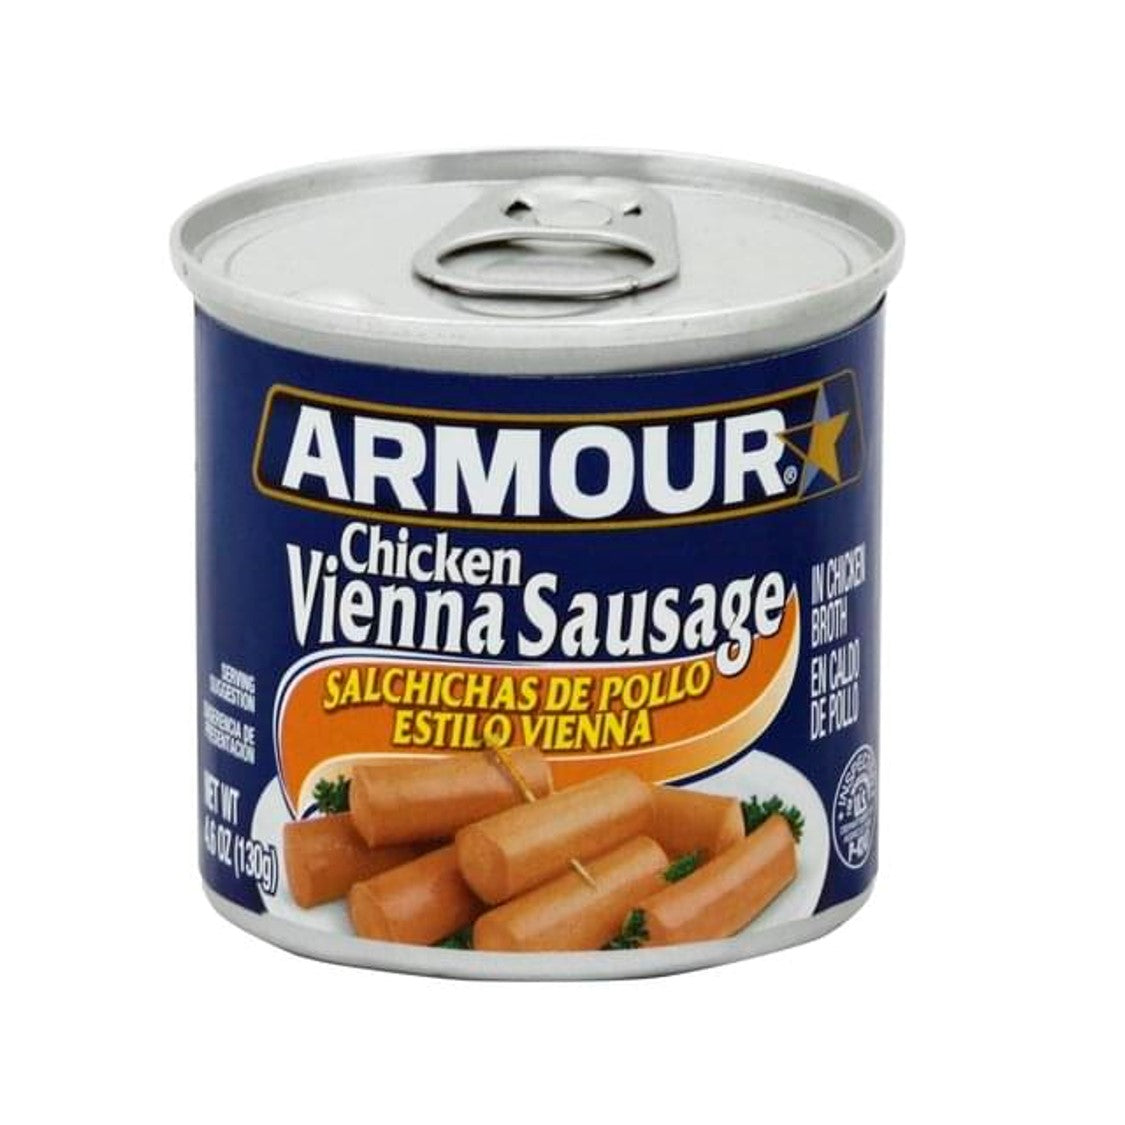 Armour Vienna Chicken Sausage (130g)